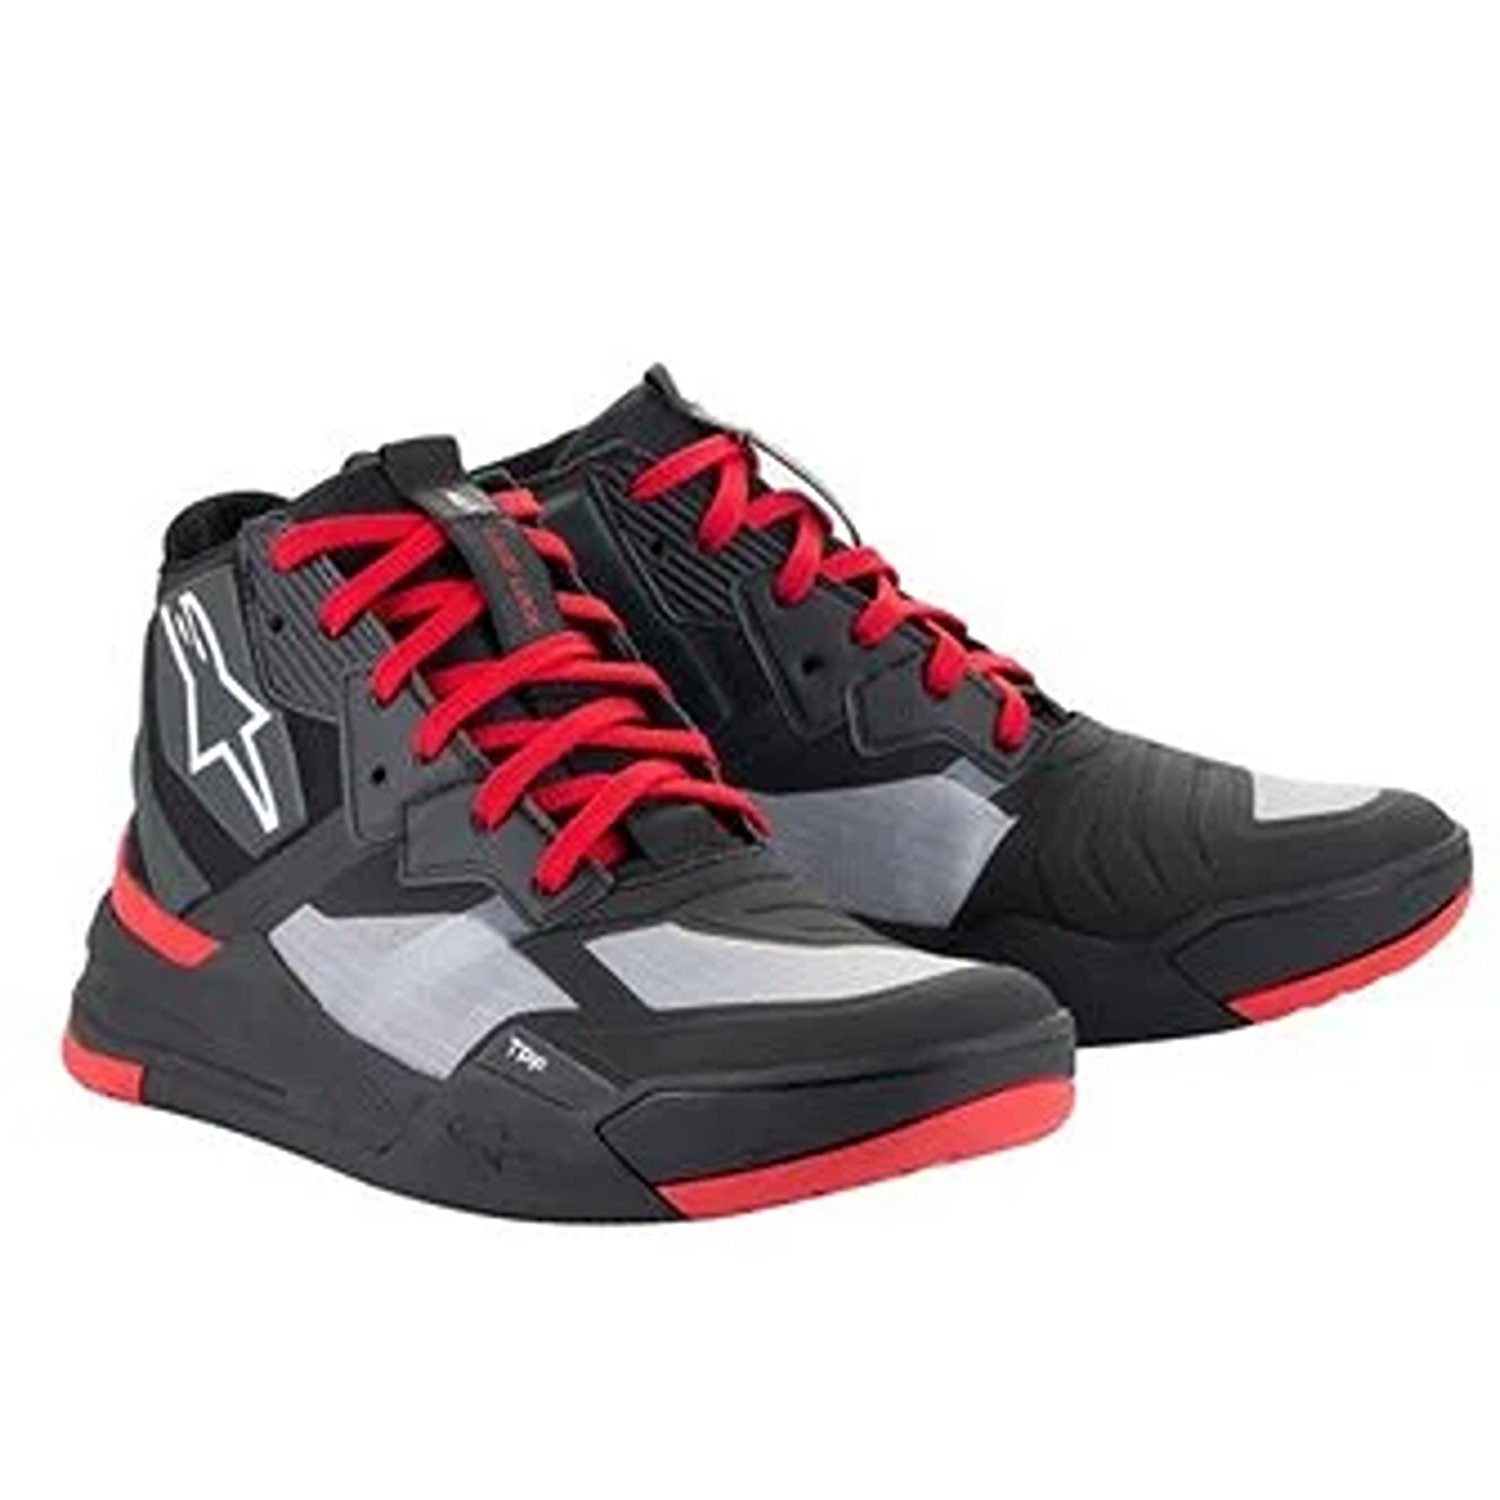 Image of Alpinestars Speedflight Shoes Black Bright Red White Größe US 8